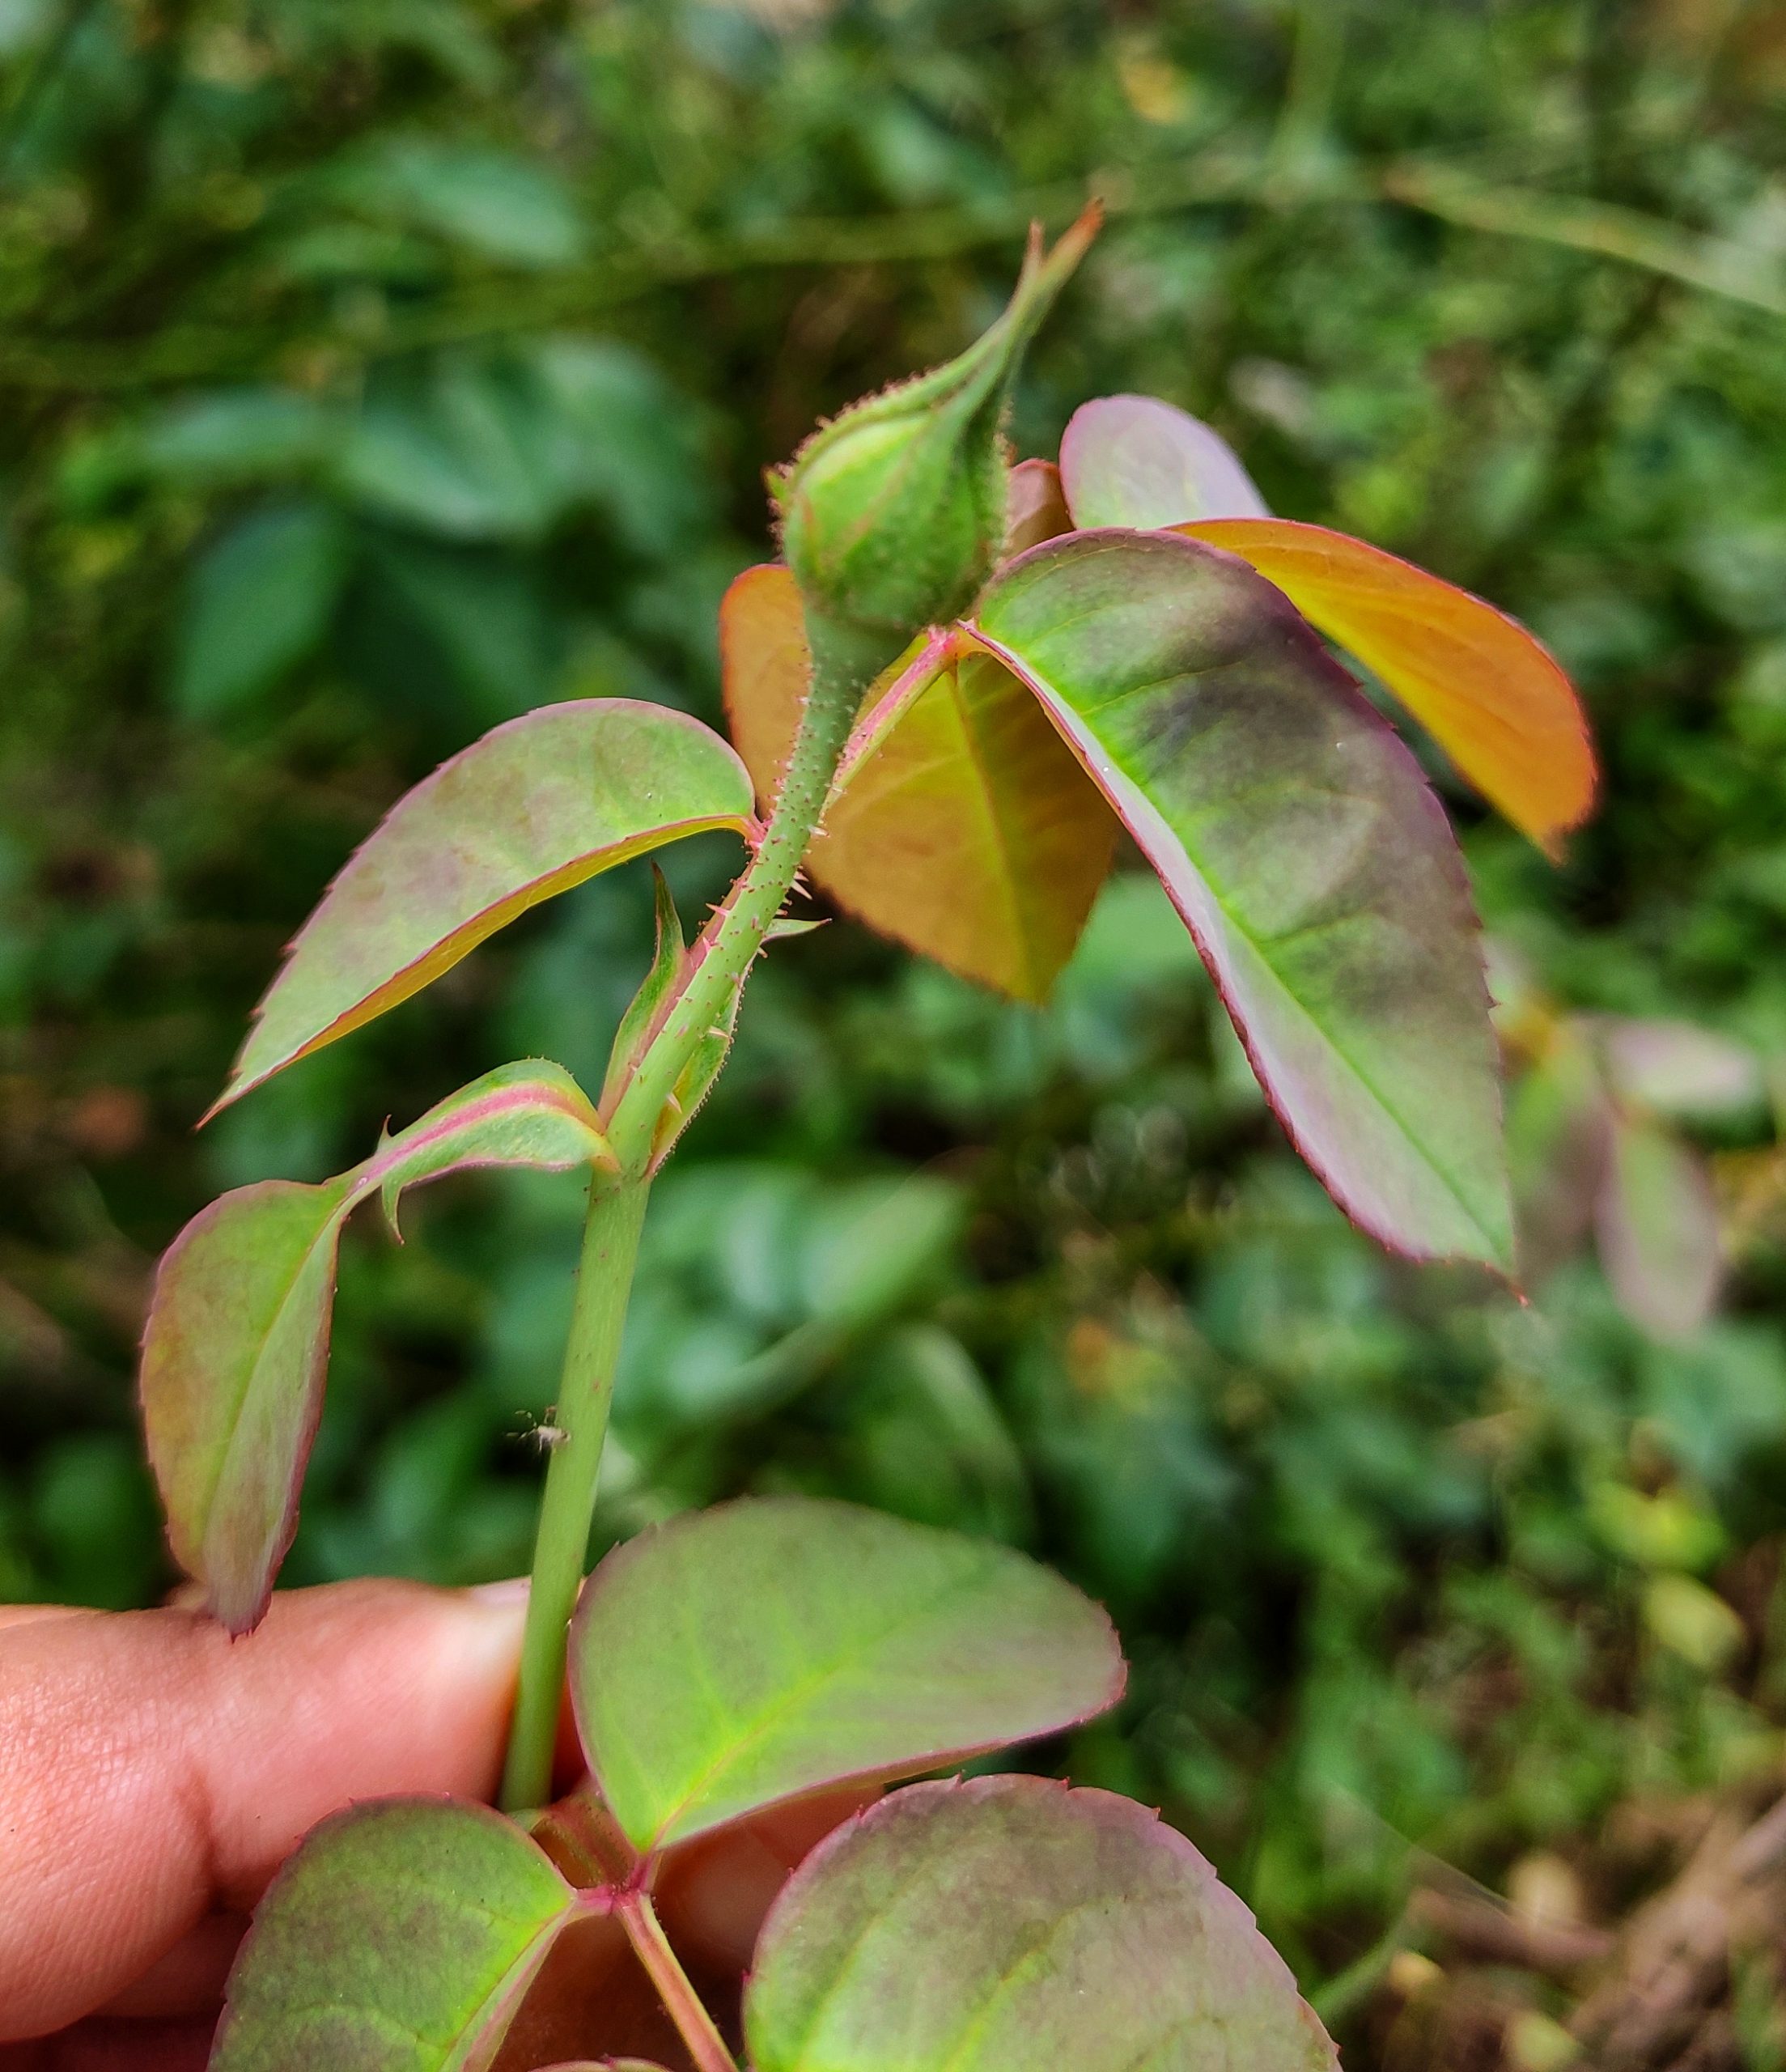 bud and leaf